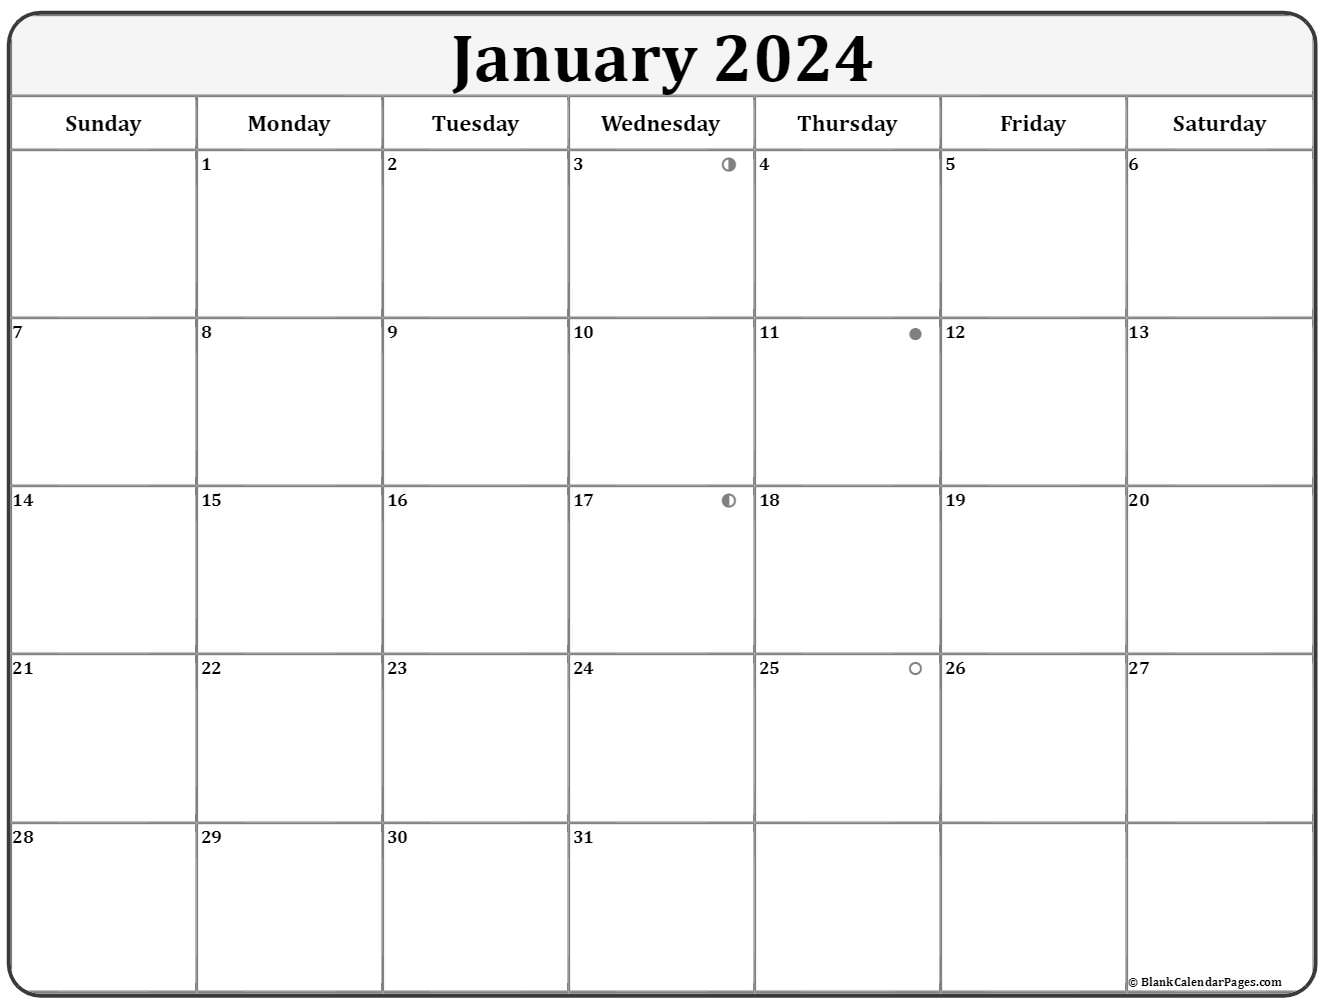 January 2020 Lunar Calendar | Moon Phase Calendar